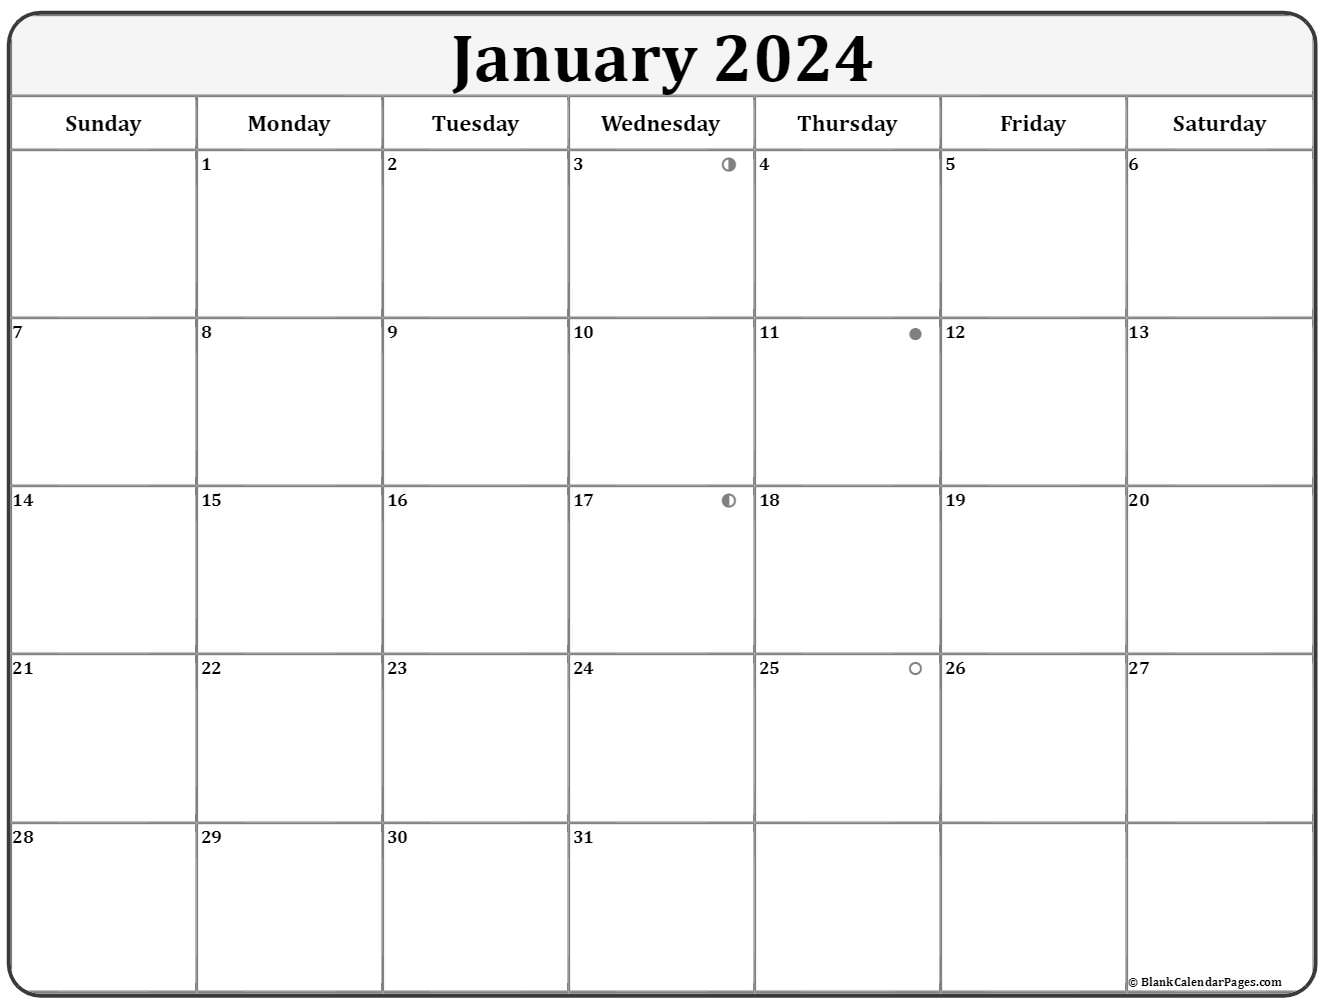 January 2020 Lunar Calendar | Moon Phase Calendar